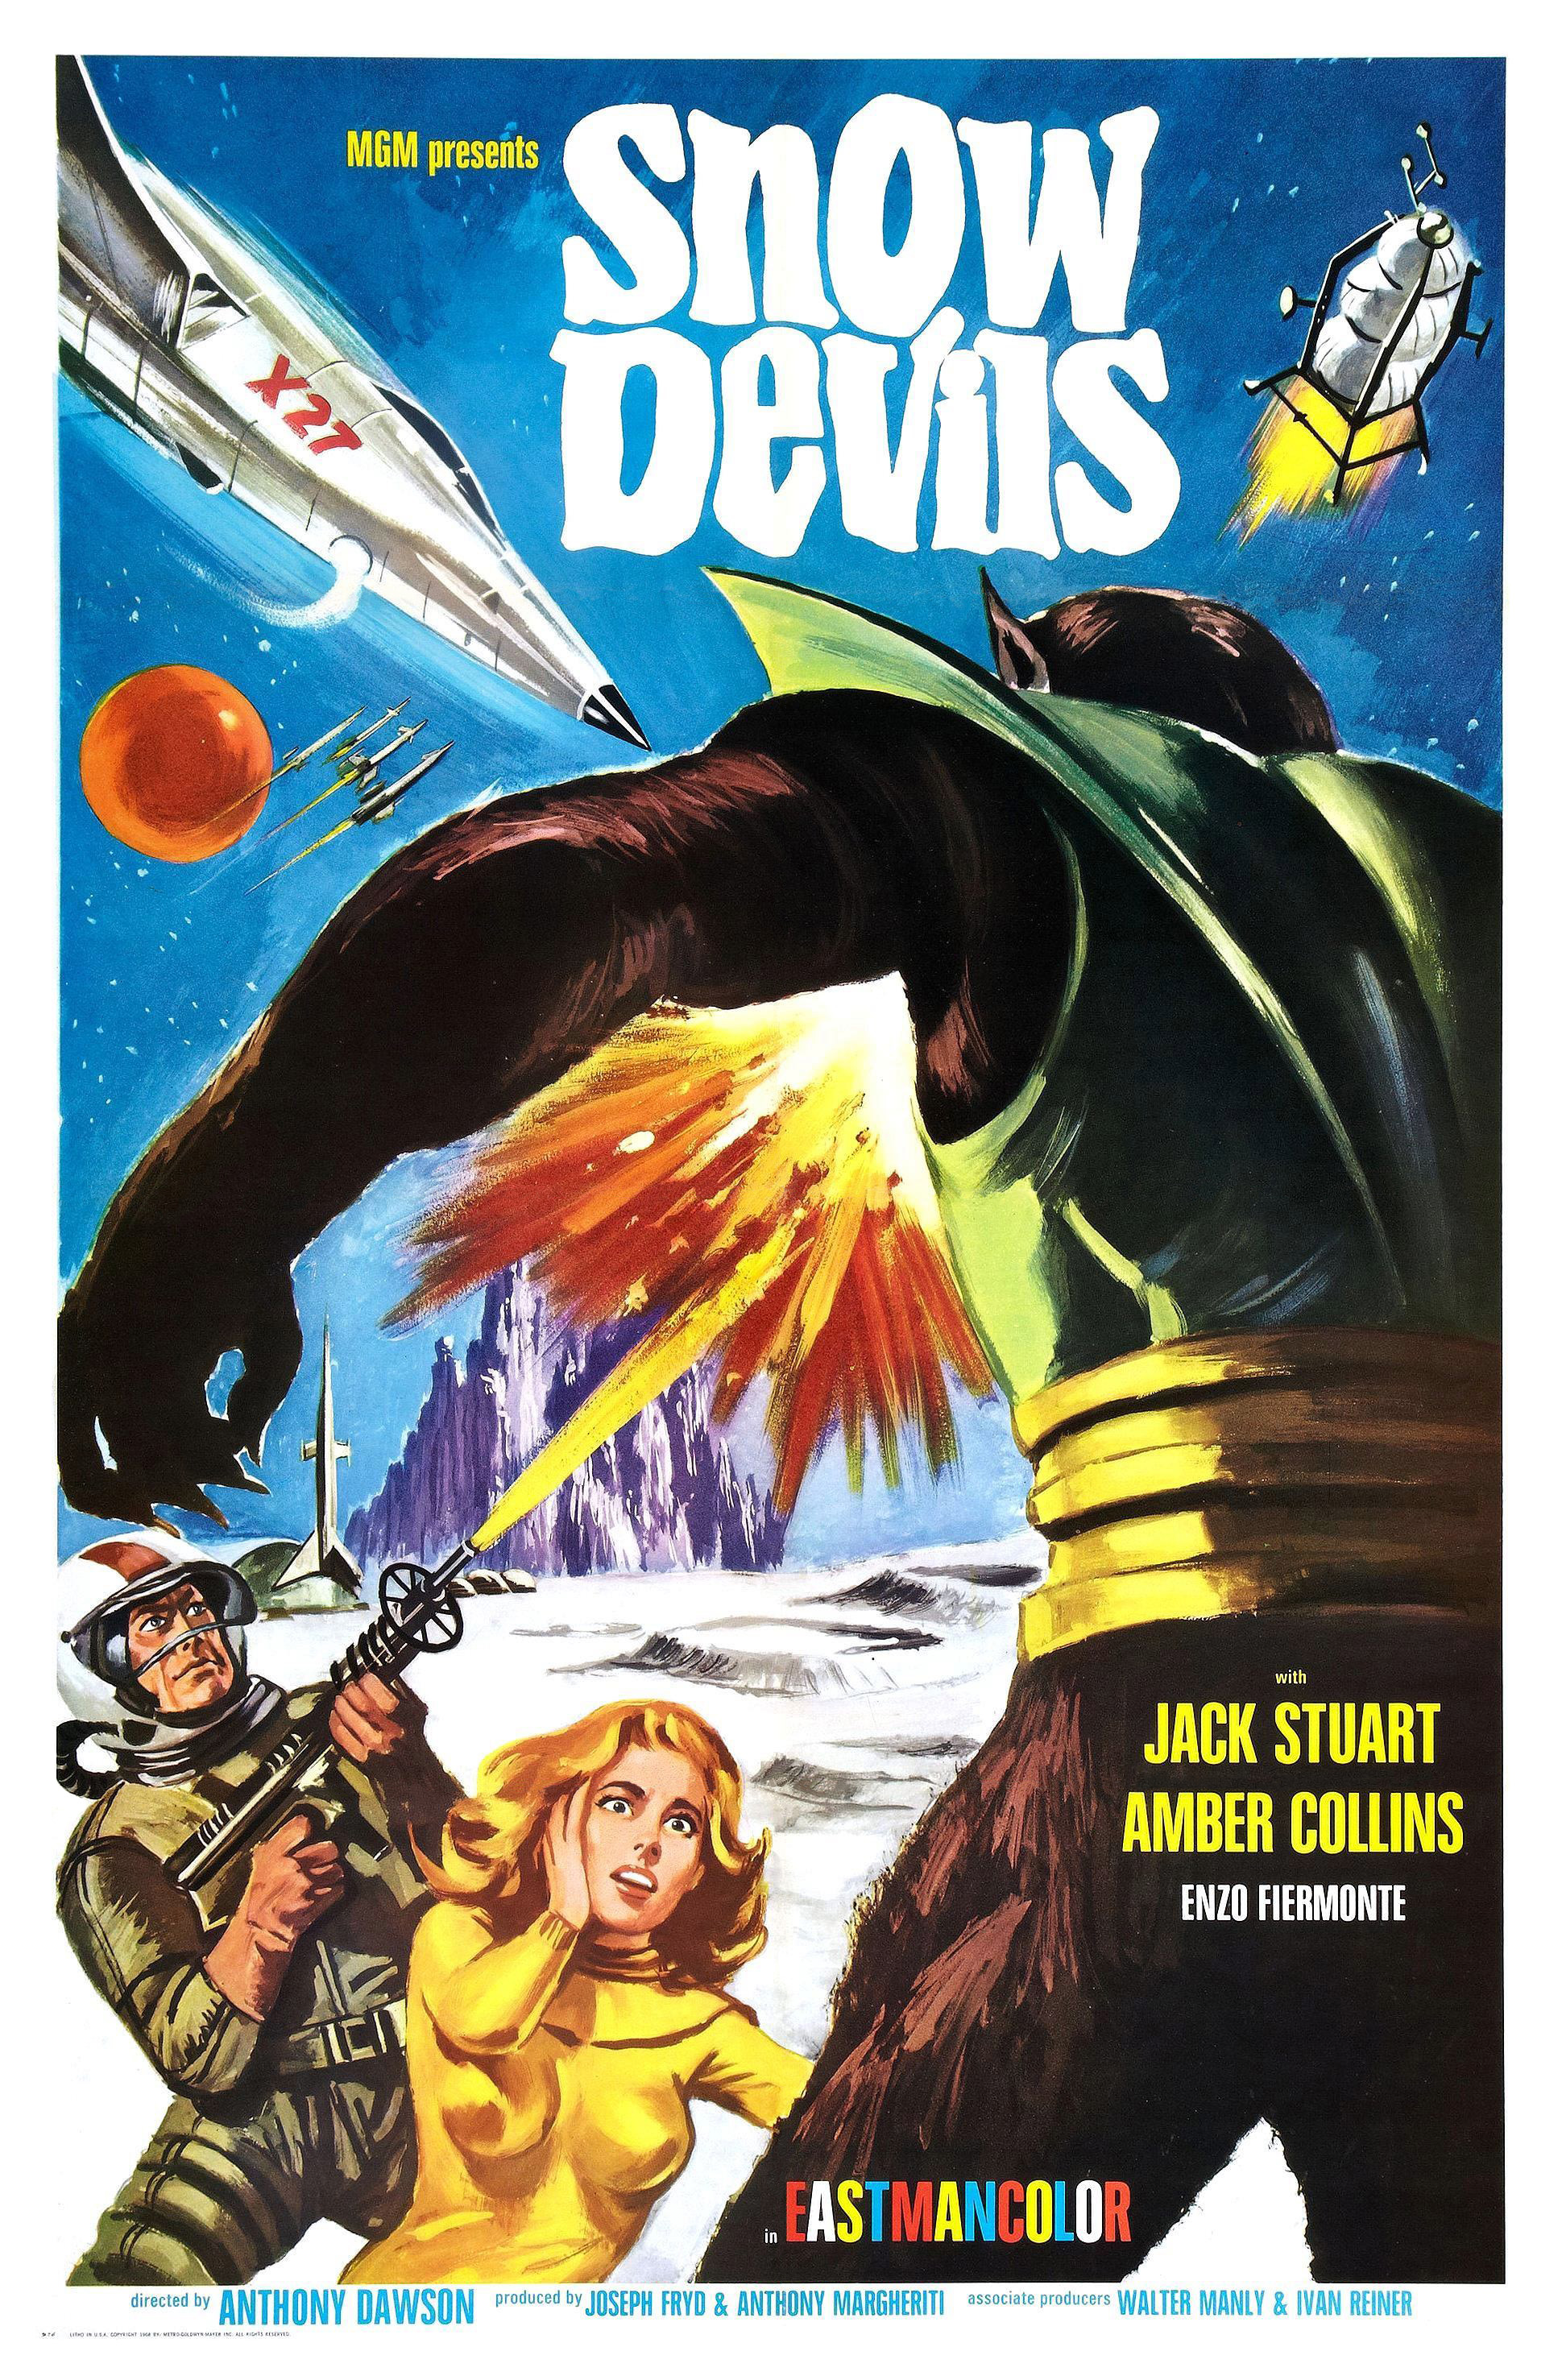 snow devils 1967 - Msm presents Snow Devis Jack Stuart Amber Collins Enze Fiemonte Astmancolor Anthovi Wson D Ente